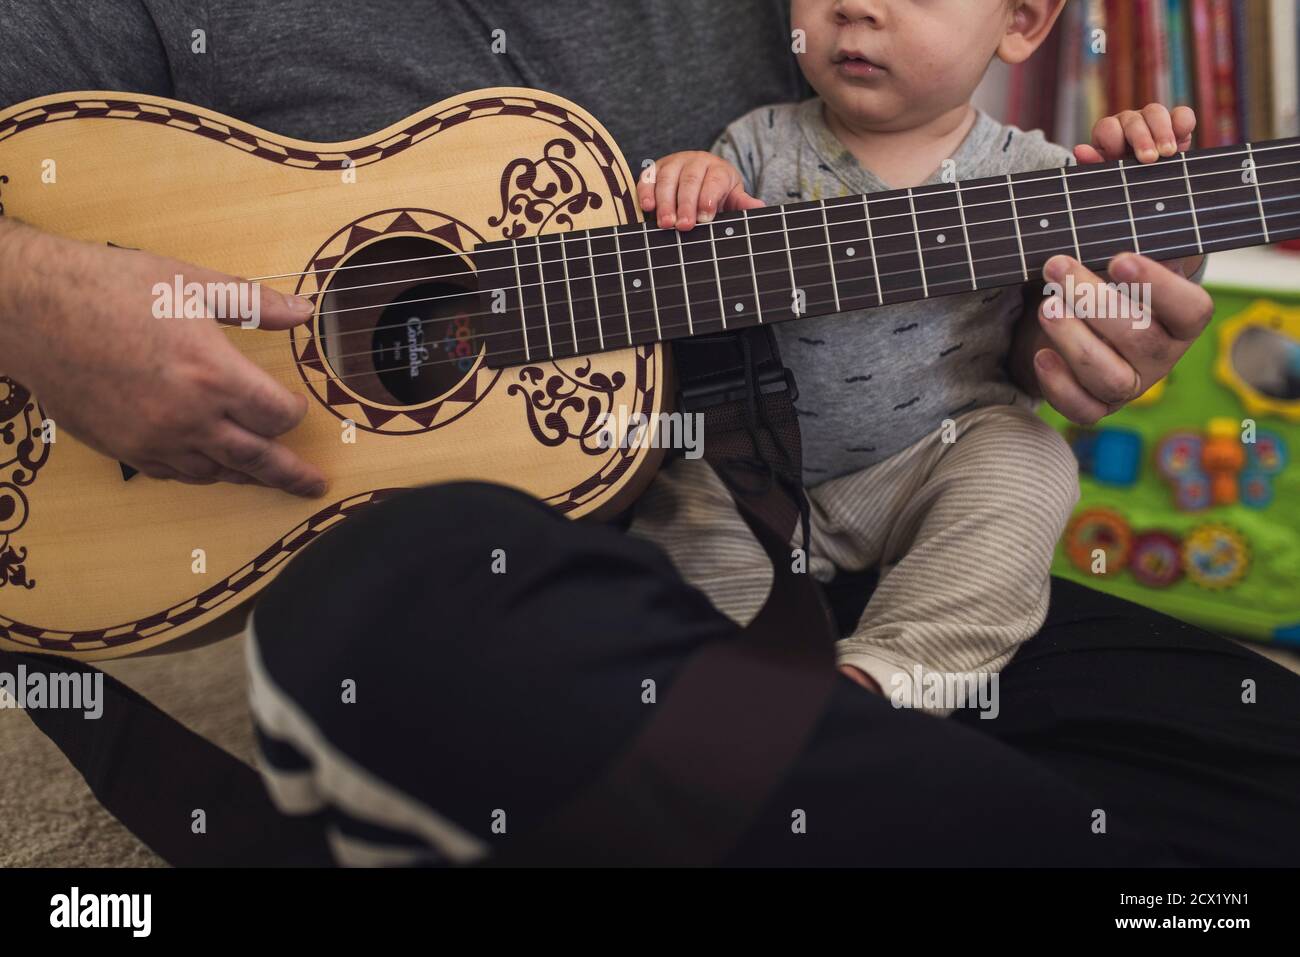 Papà sul pavimento che suona una chitarra di dimensioni ridotte tenendo in mano 1 anno di età. Foto Stock